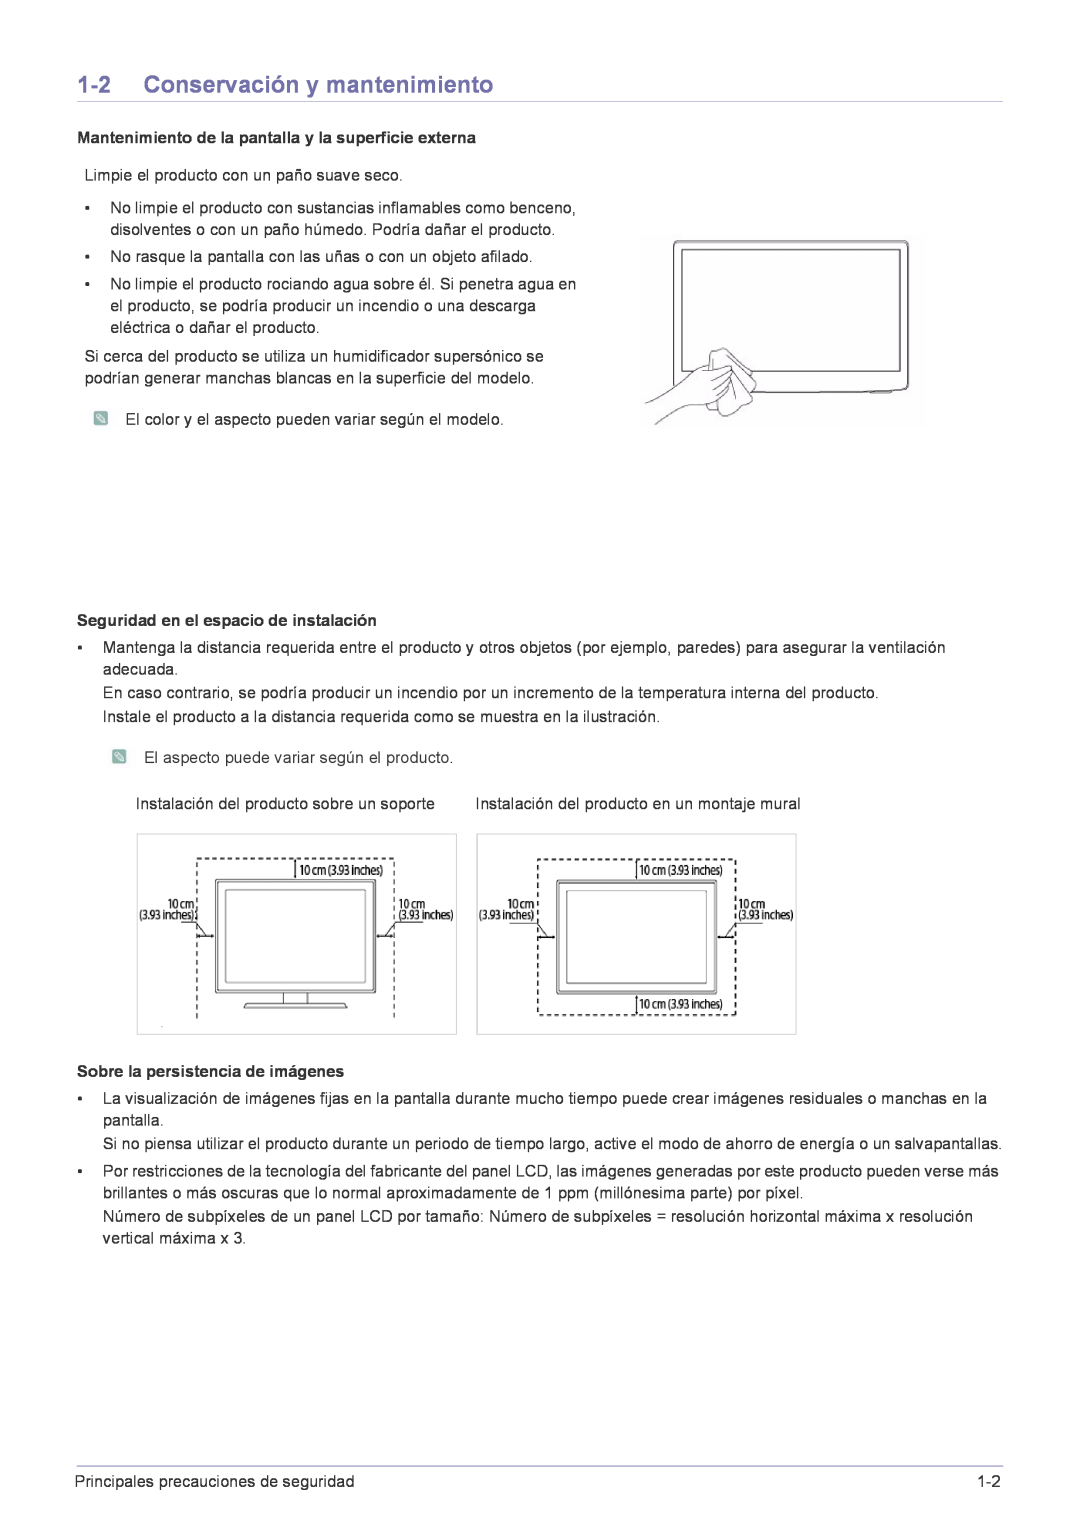 Samsung LS22FMDGF/EN manual Conservación y mantenimiento, Mantenimiento de la pantalla y la superficie externa 